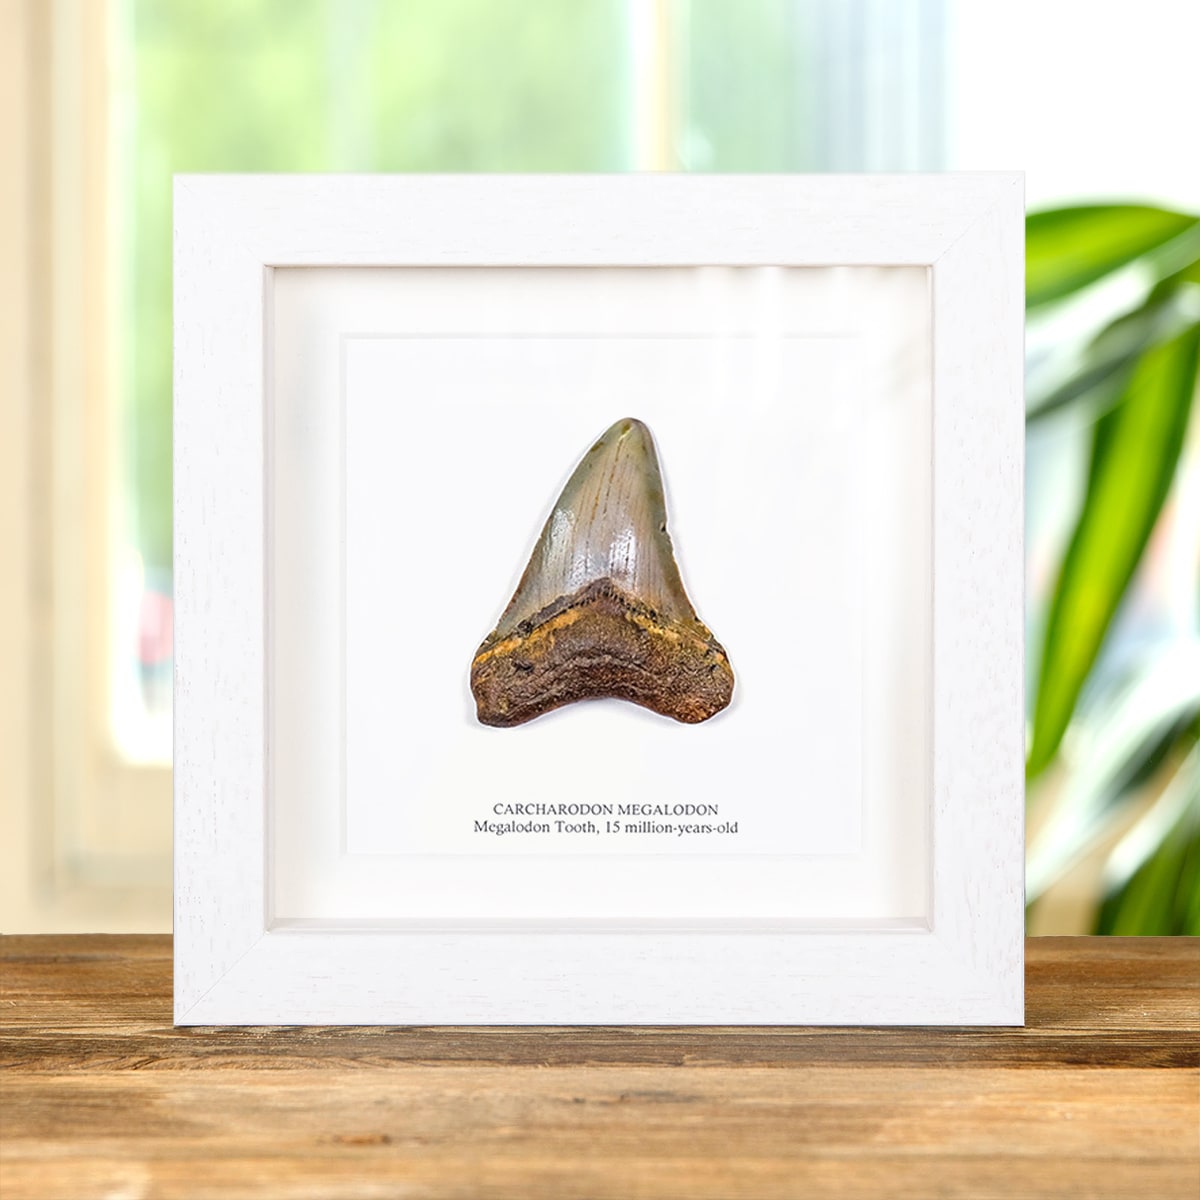 Medium Megalodon Shark Tooth (Carcharodon megalodon) Fossil in Box Frame